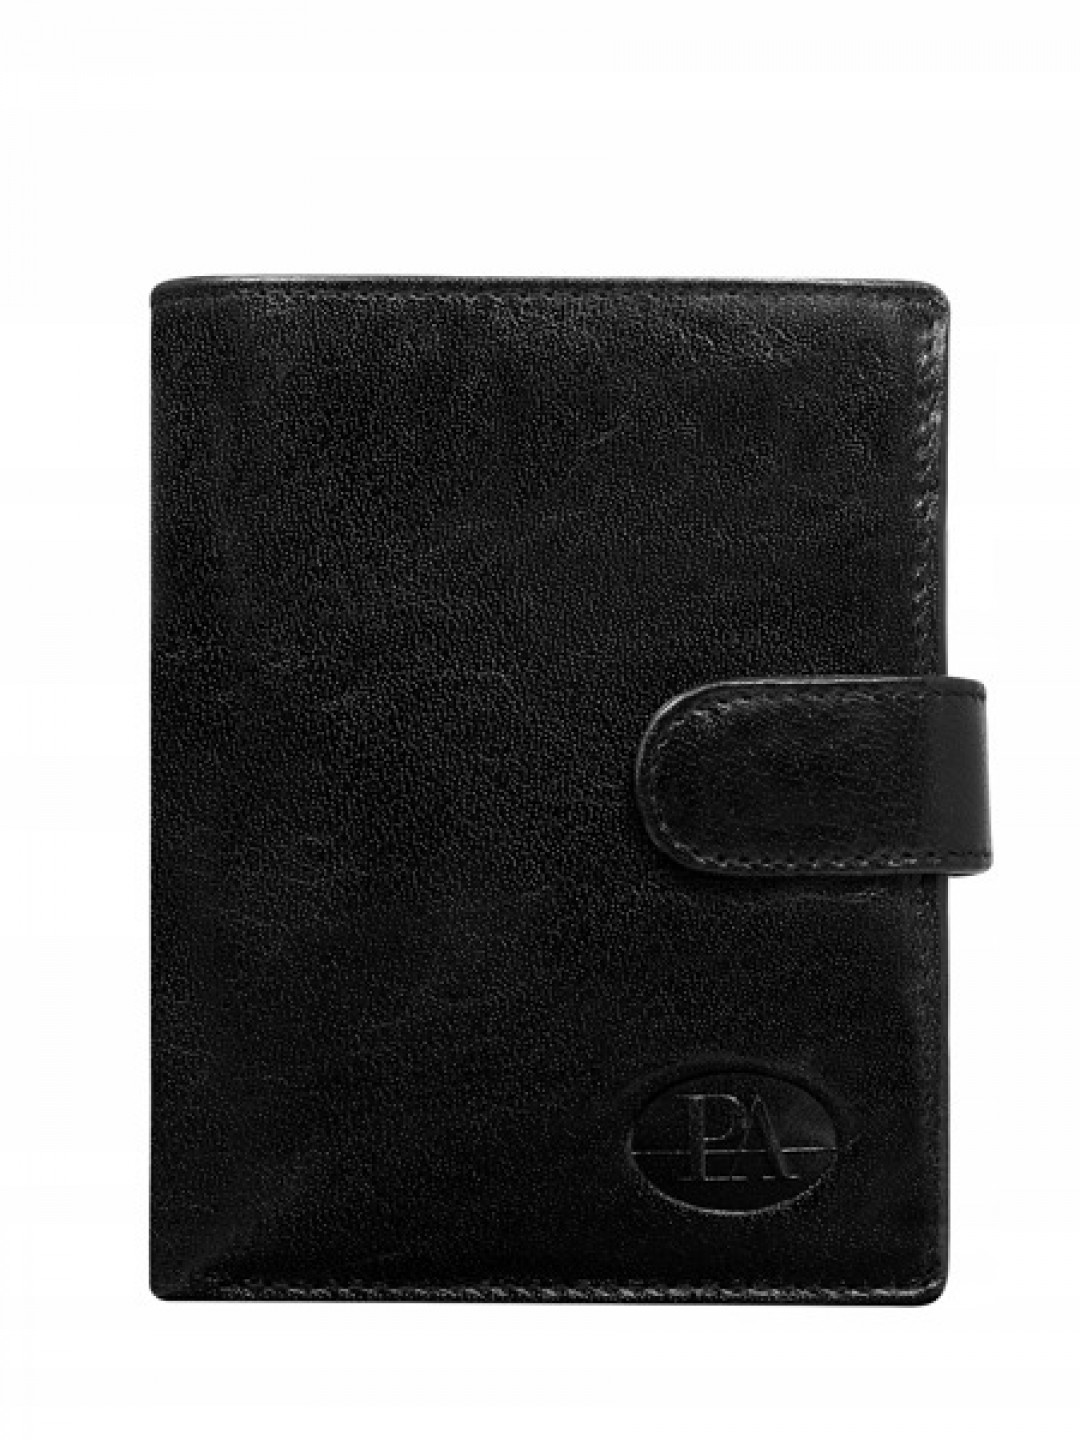 Pánská kožená peněženka s přezkou Toni černá